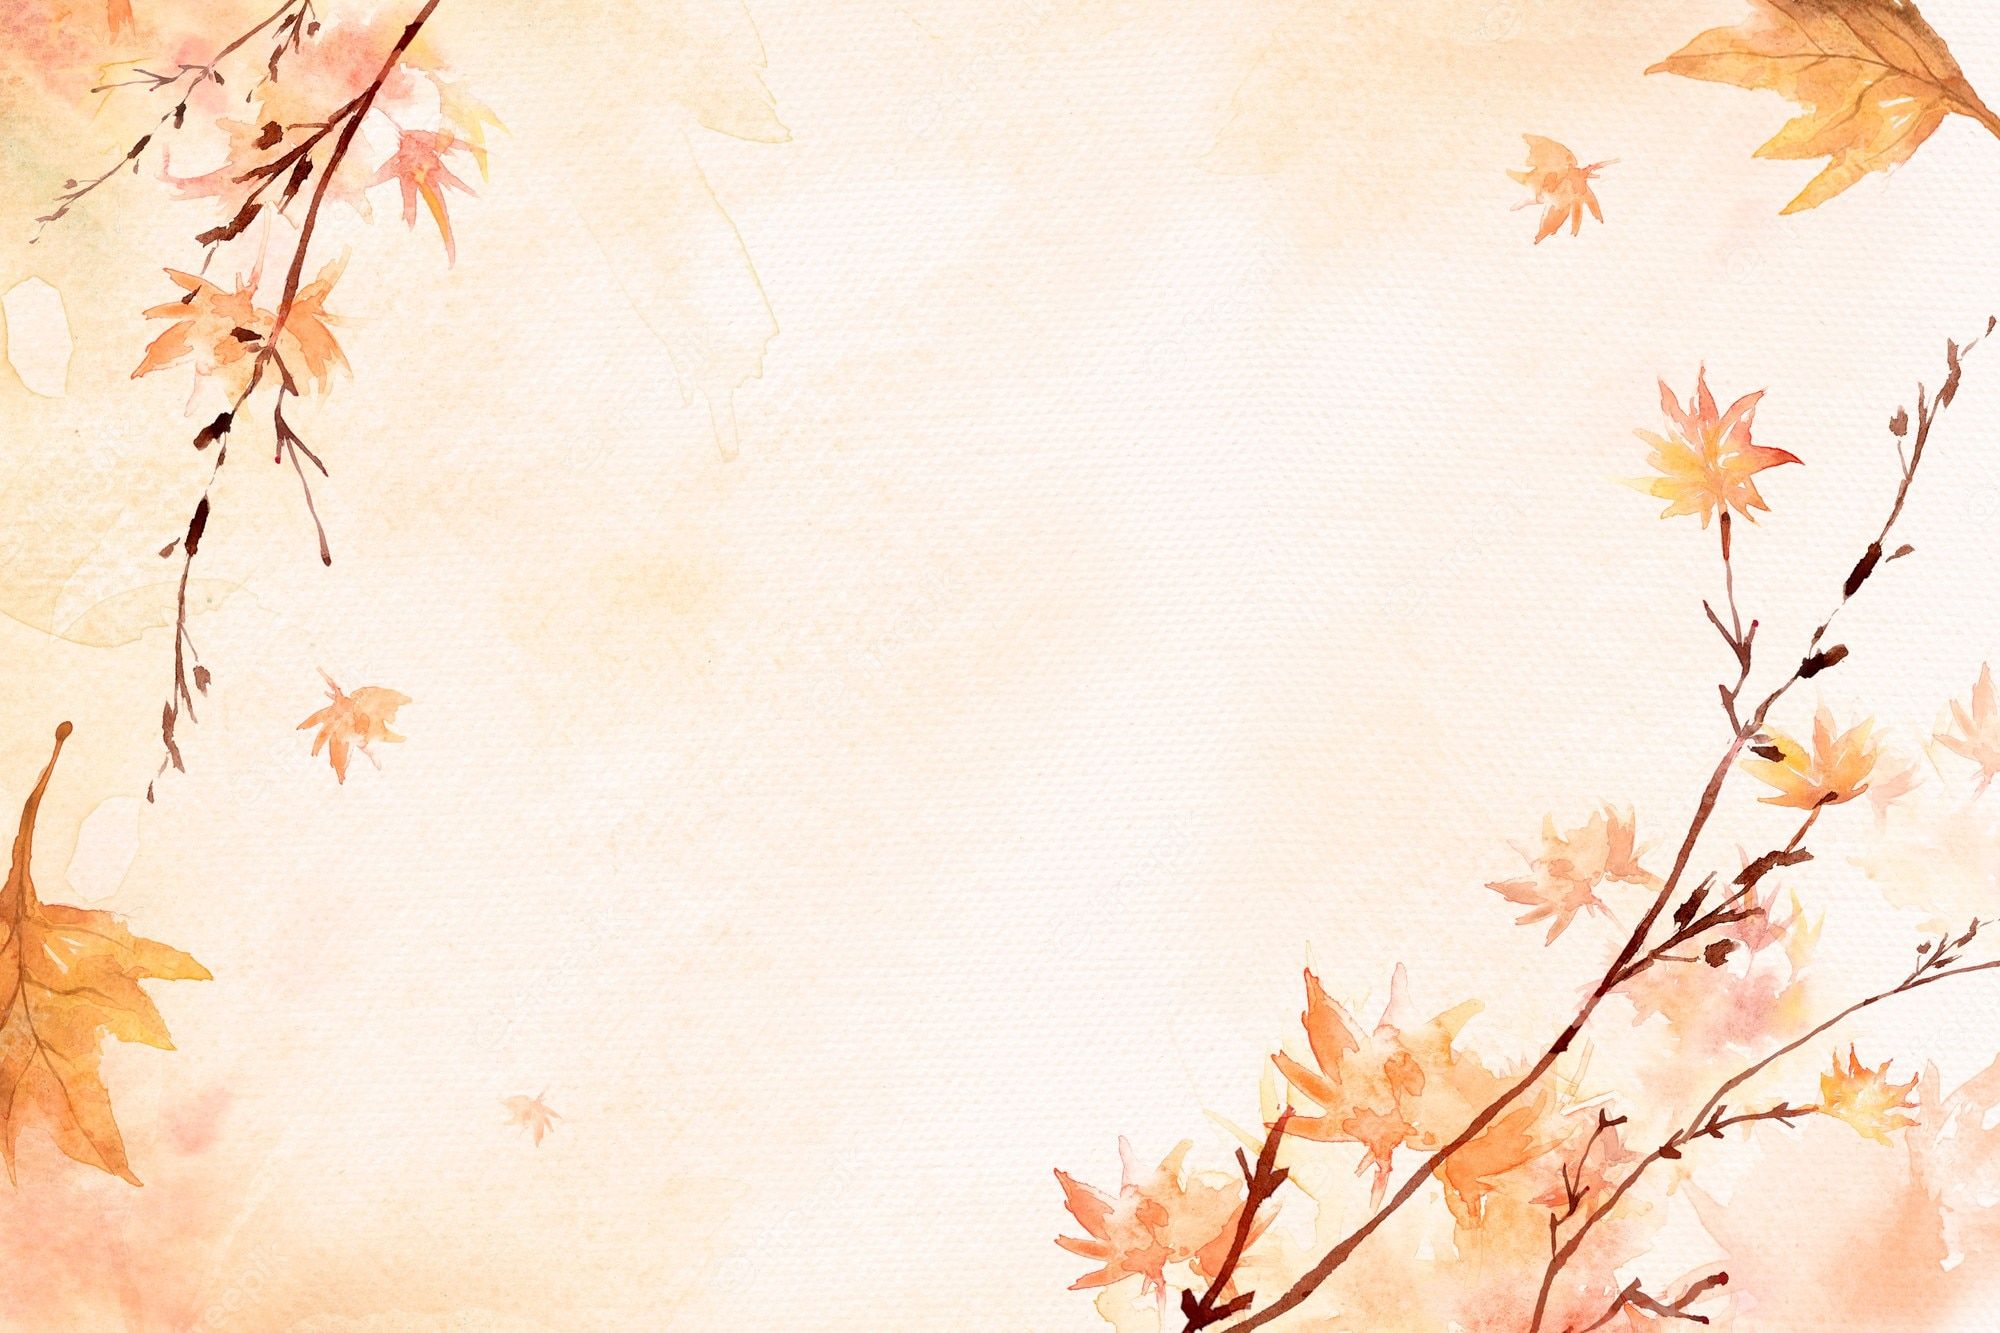  Herbstliche Hintergrundbild 2000x1333. Hintergrund Herbst Bilder Download auf Freepik